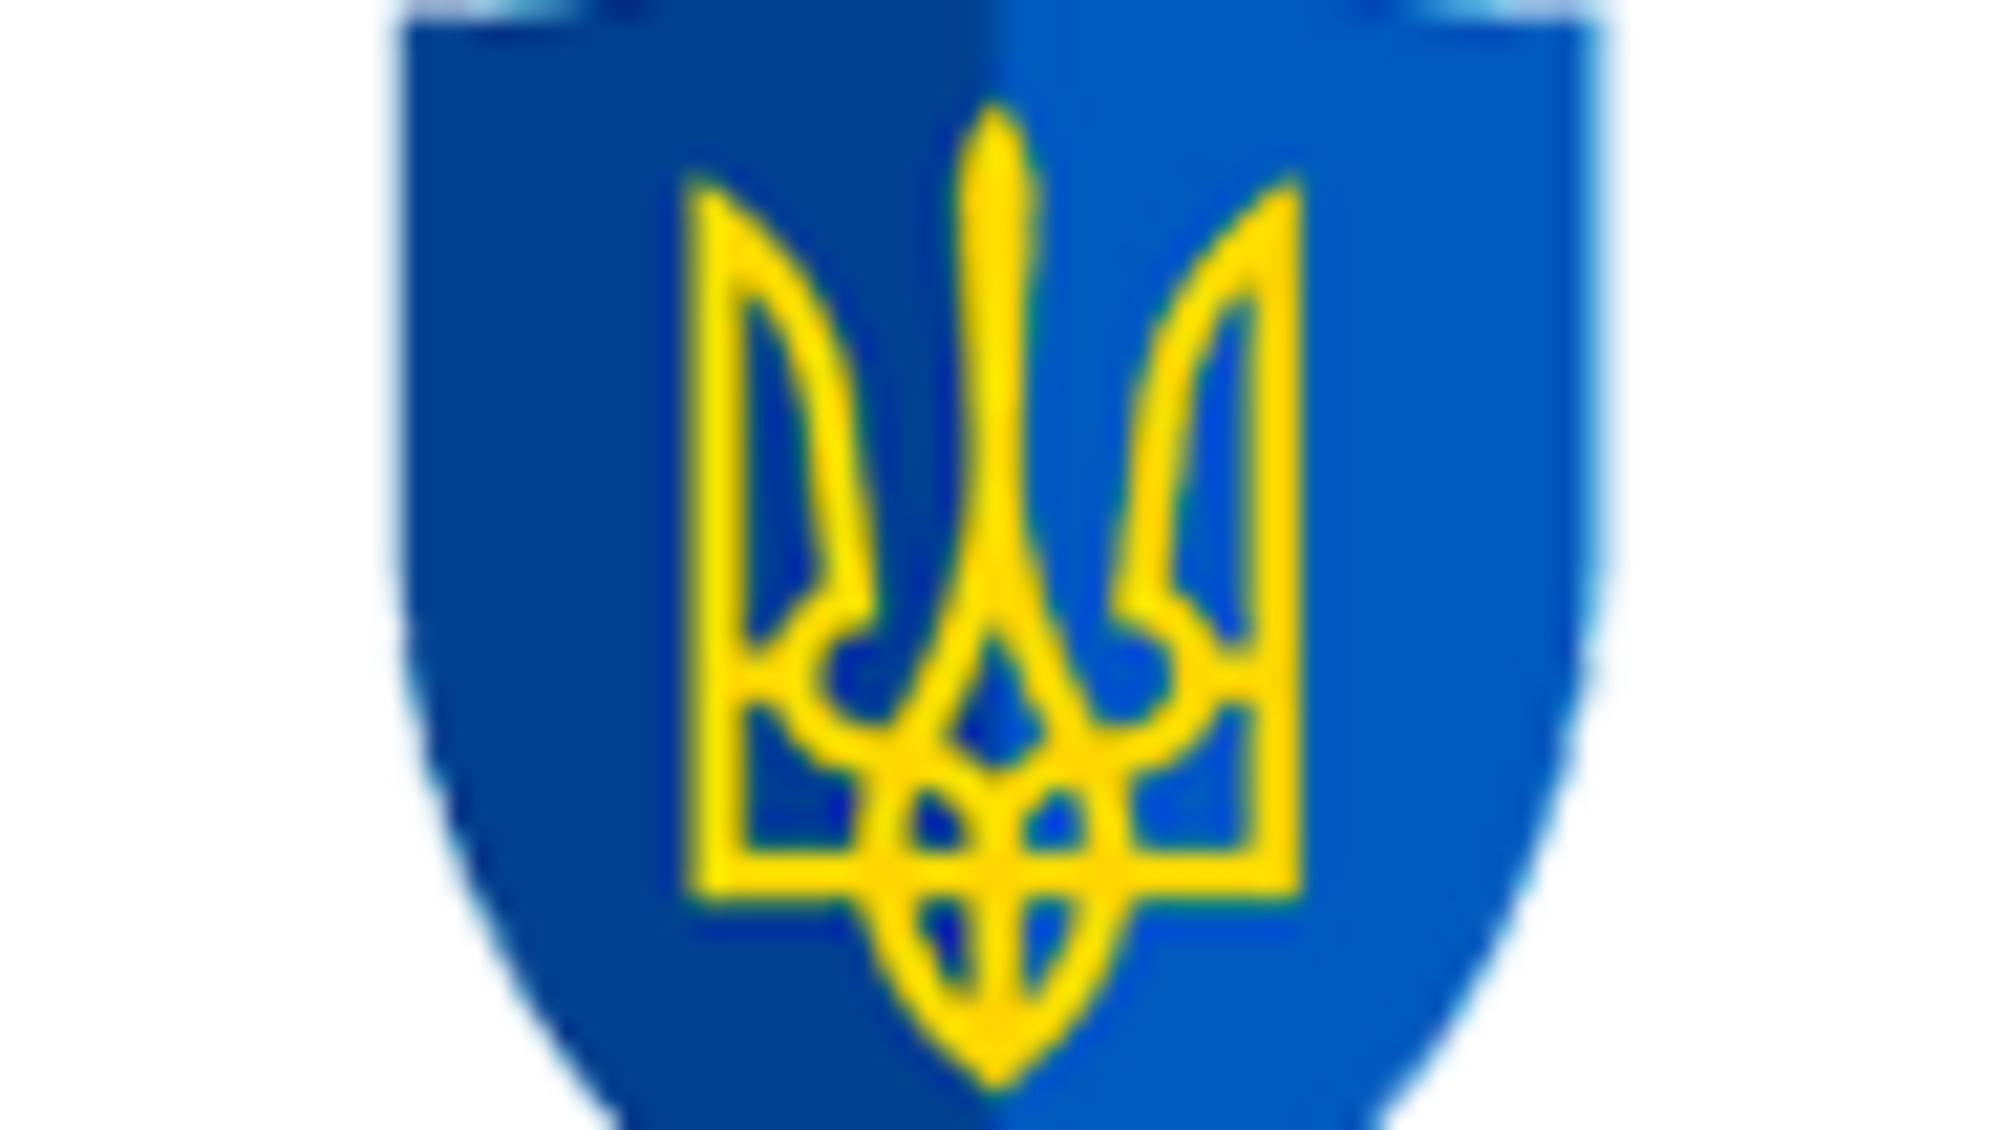 За фактом загибелі 2 та поранення 9 військовослужбовців ЗС України зареєстроване кримінальне провадження